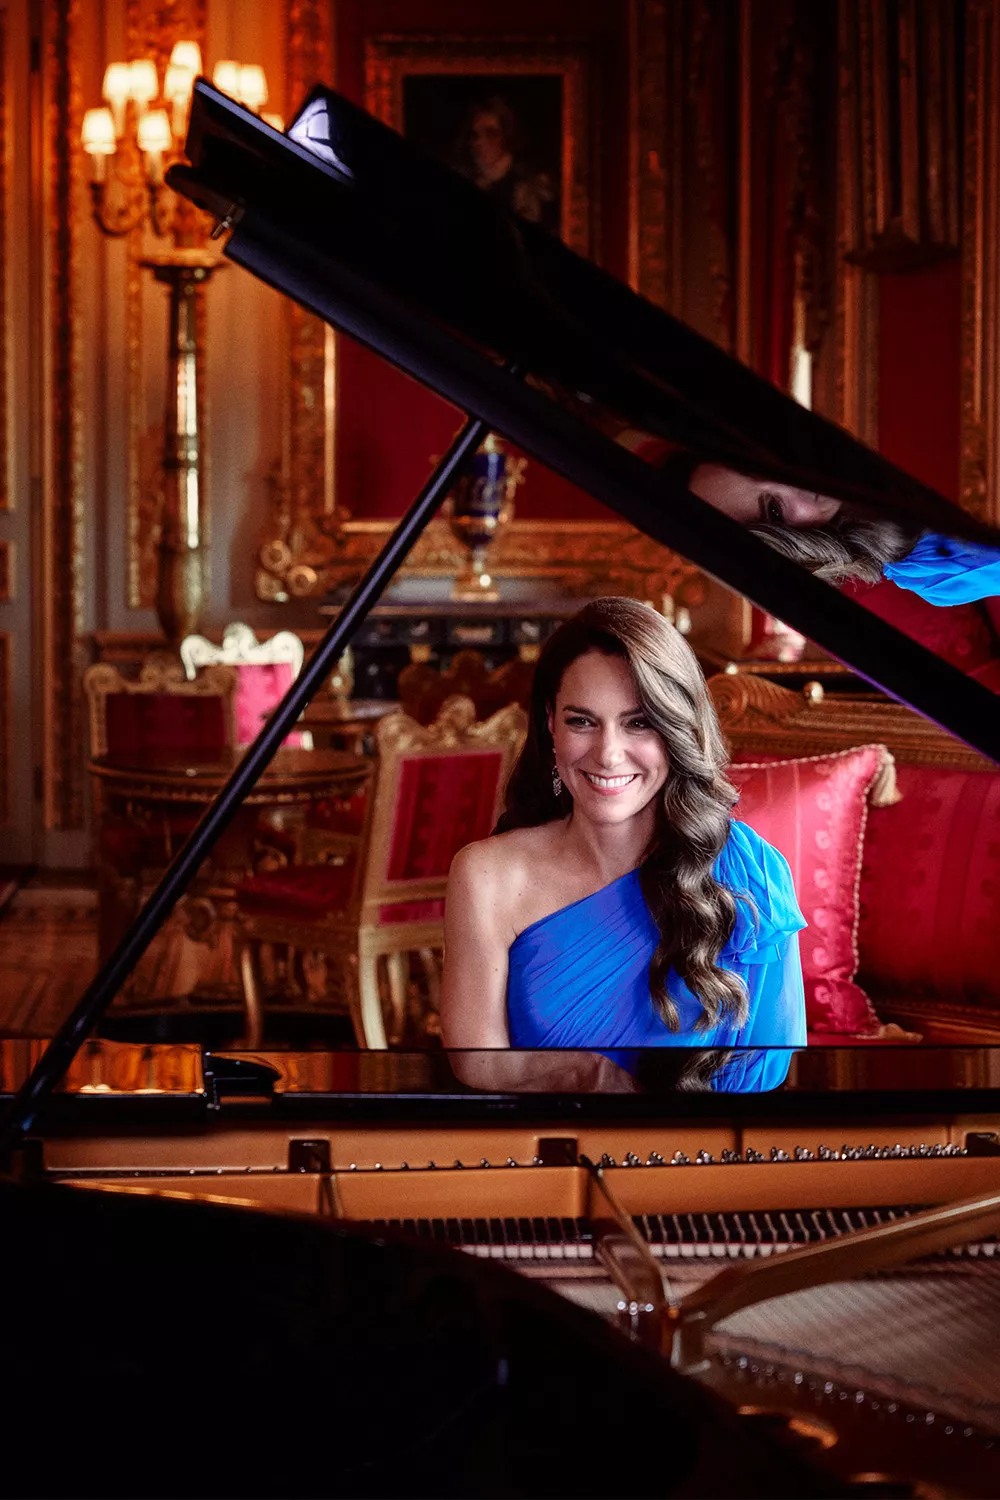 şirret | Prenses Kate aslında Eurovision'da piyano mu çalıyordu yoksa hepsi bir yalan mıydı?